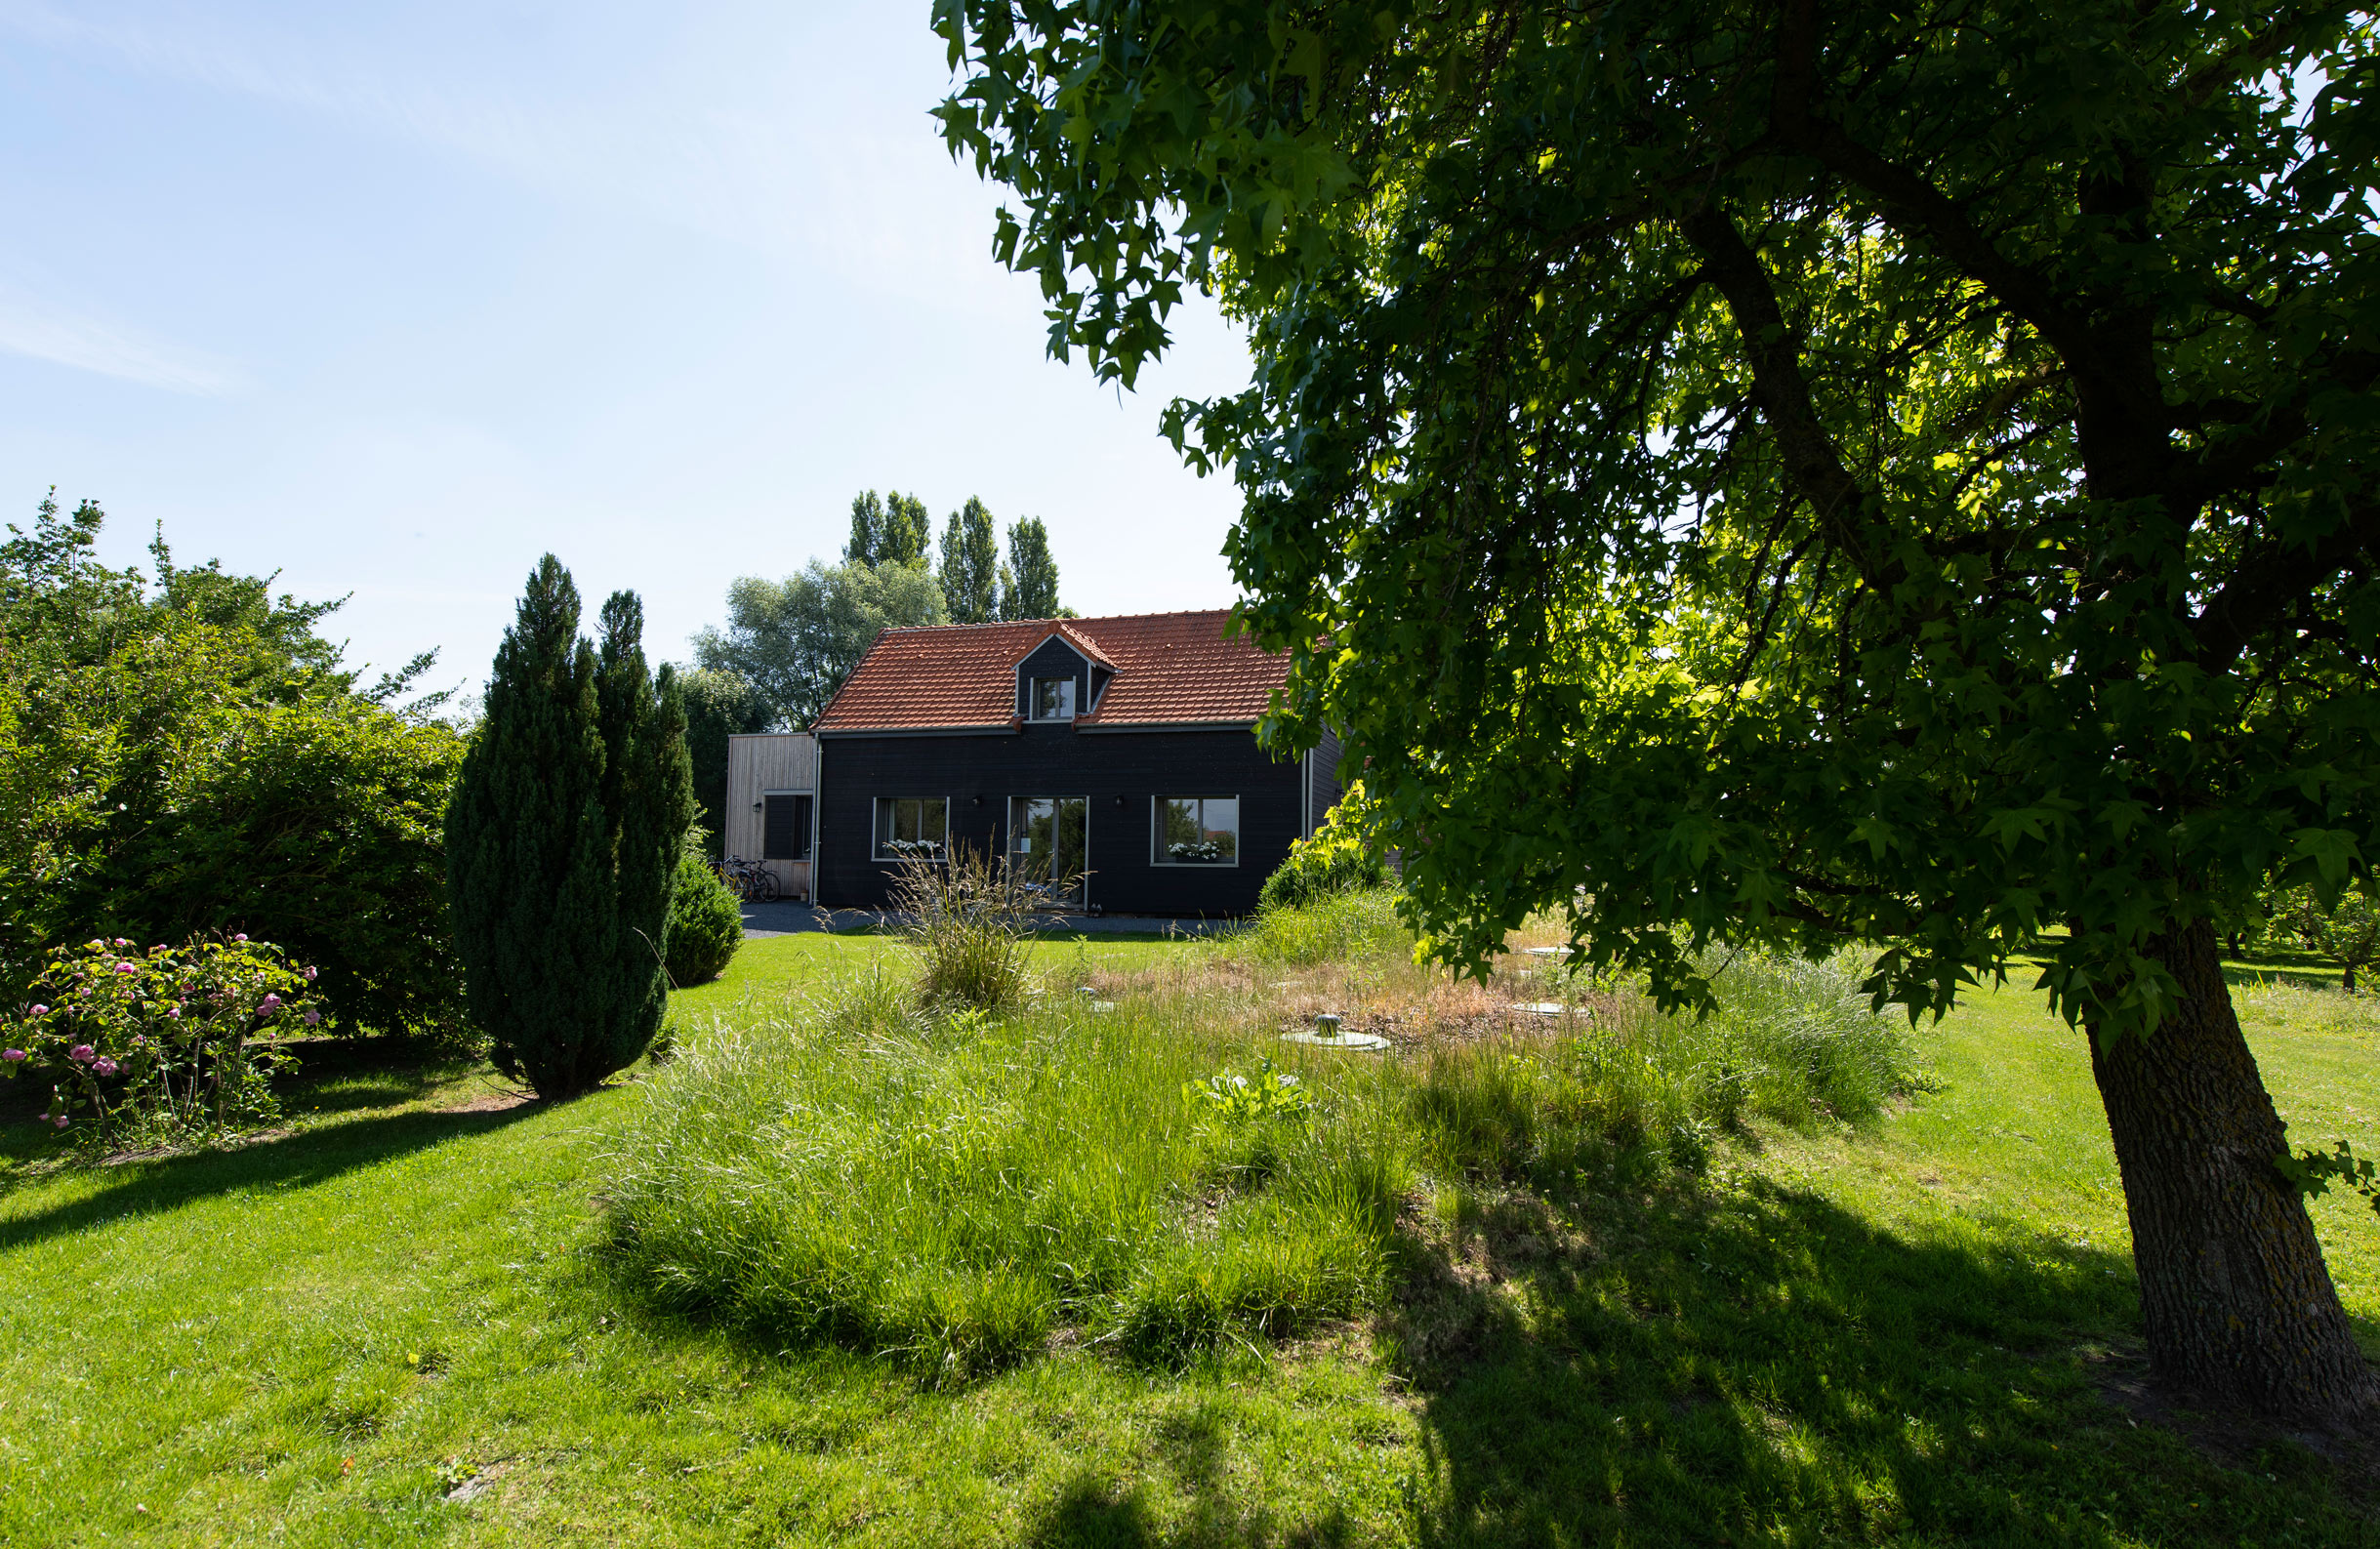 La maison d'hôtes Au jardin sur l'eau à Amiens et son immense potager